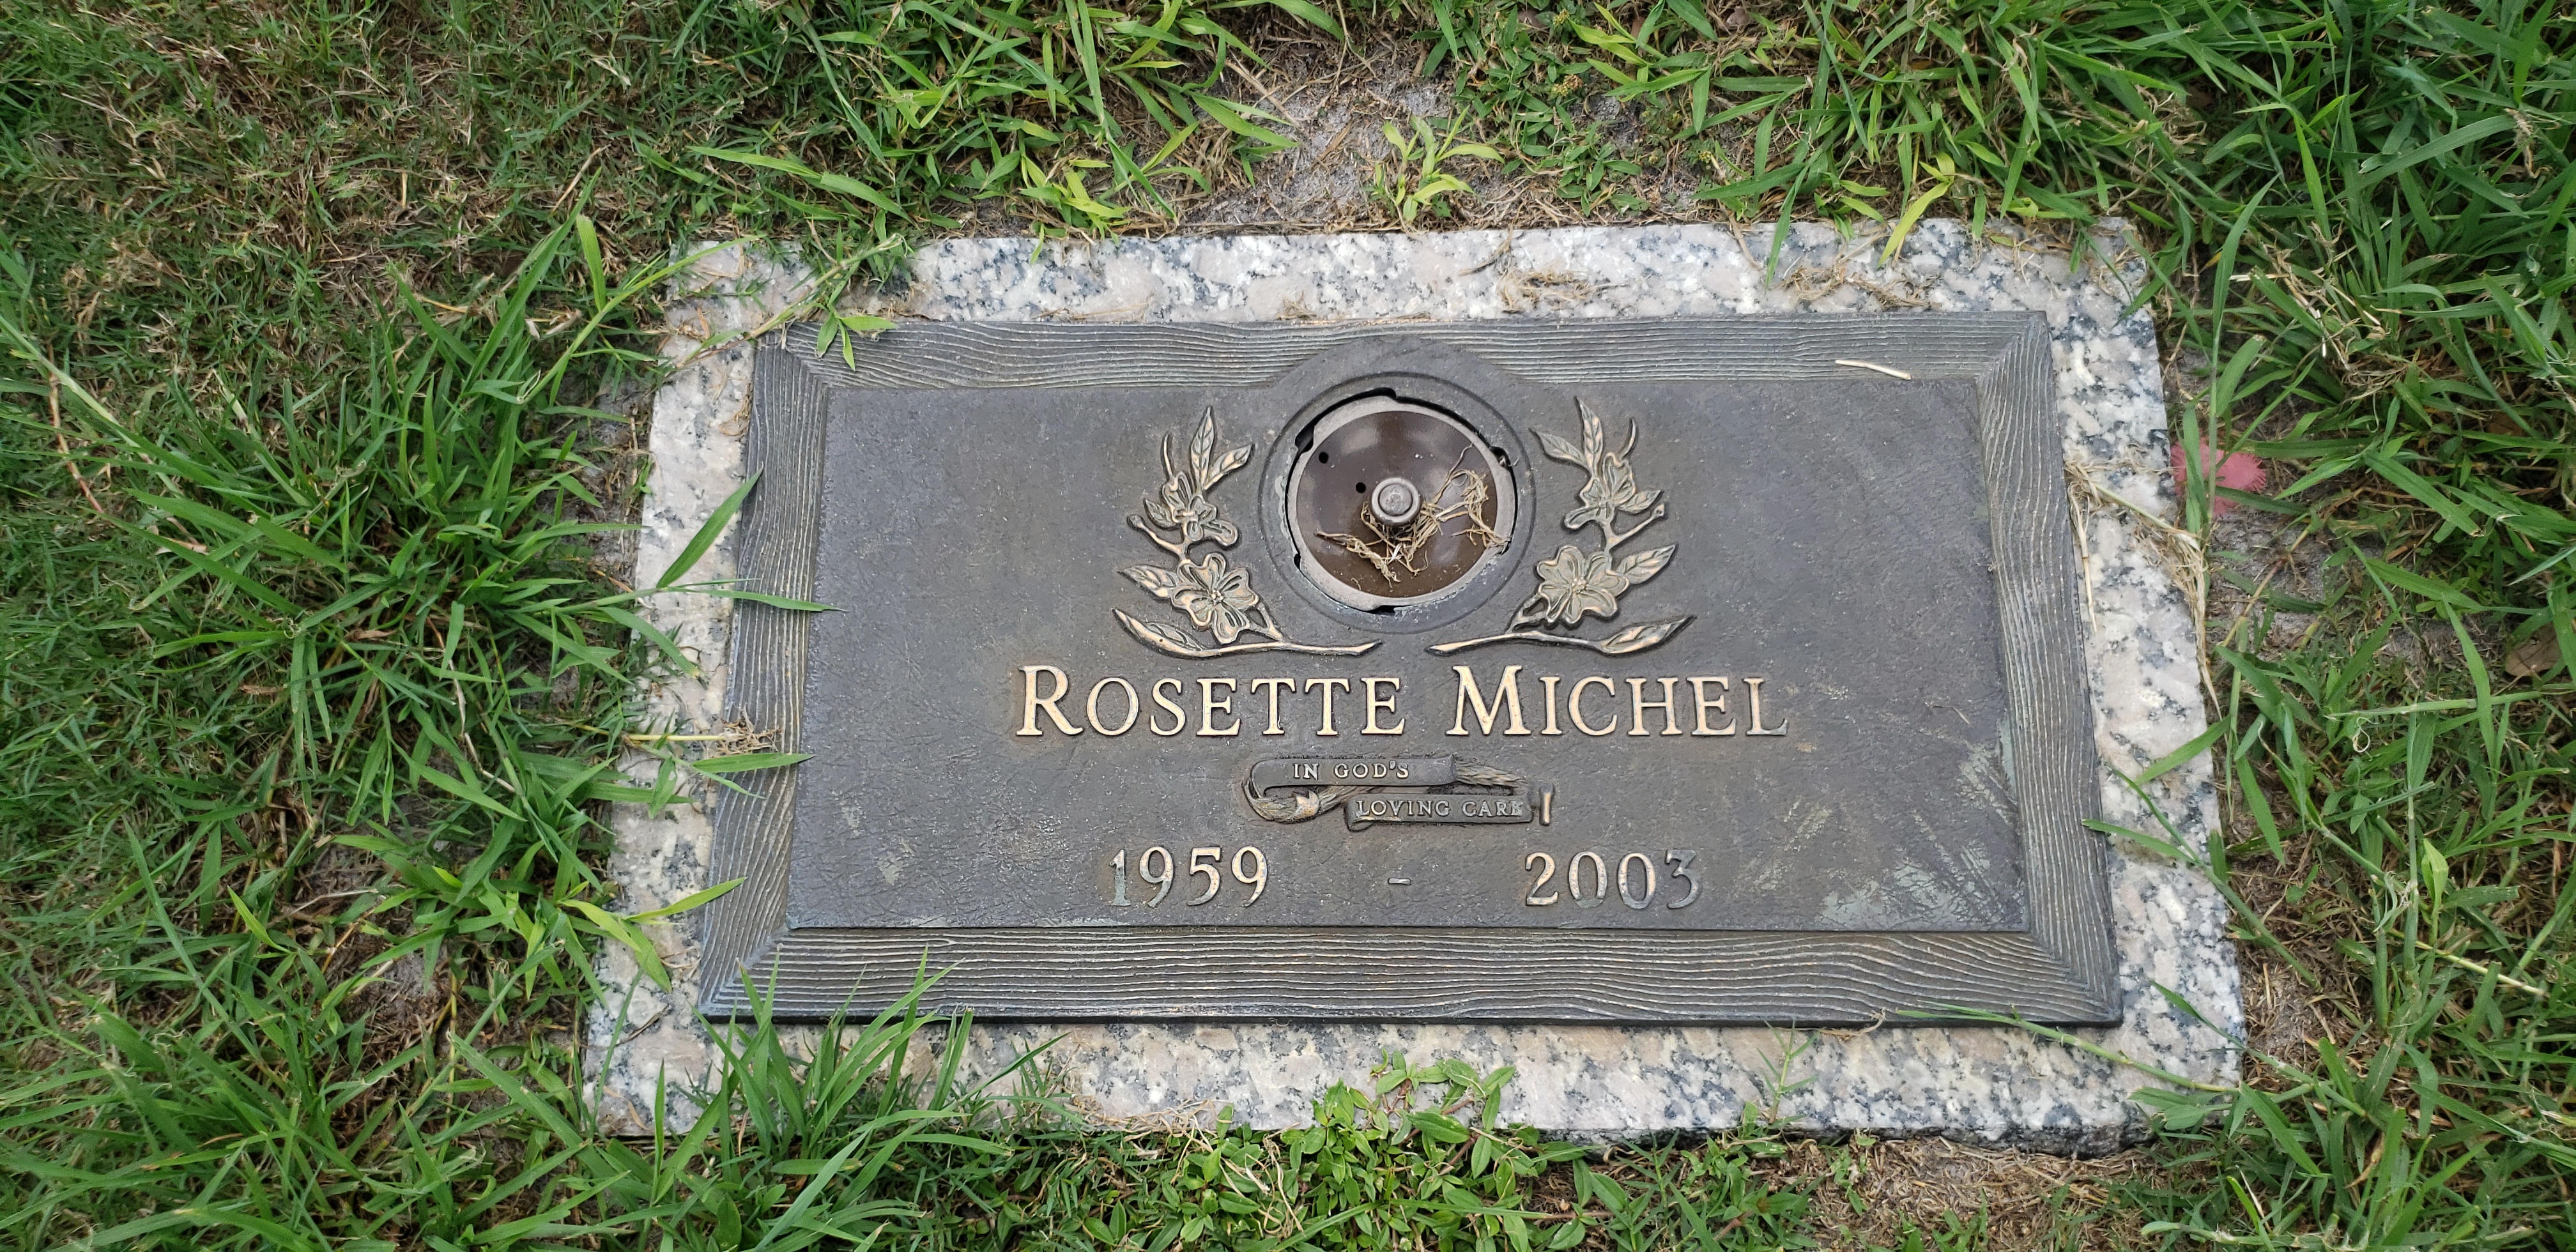 Rosette Michel